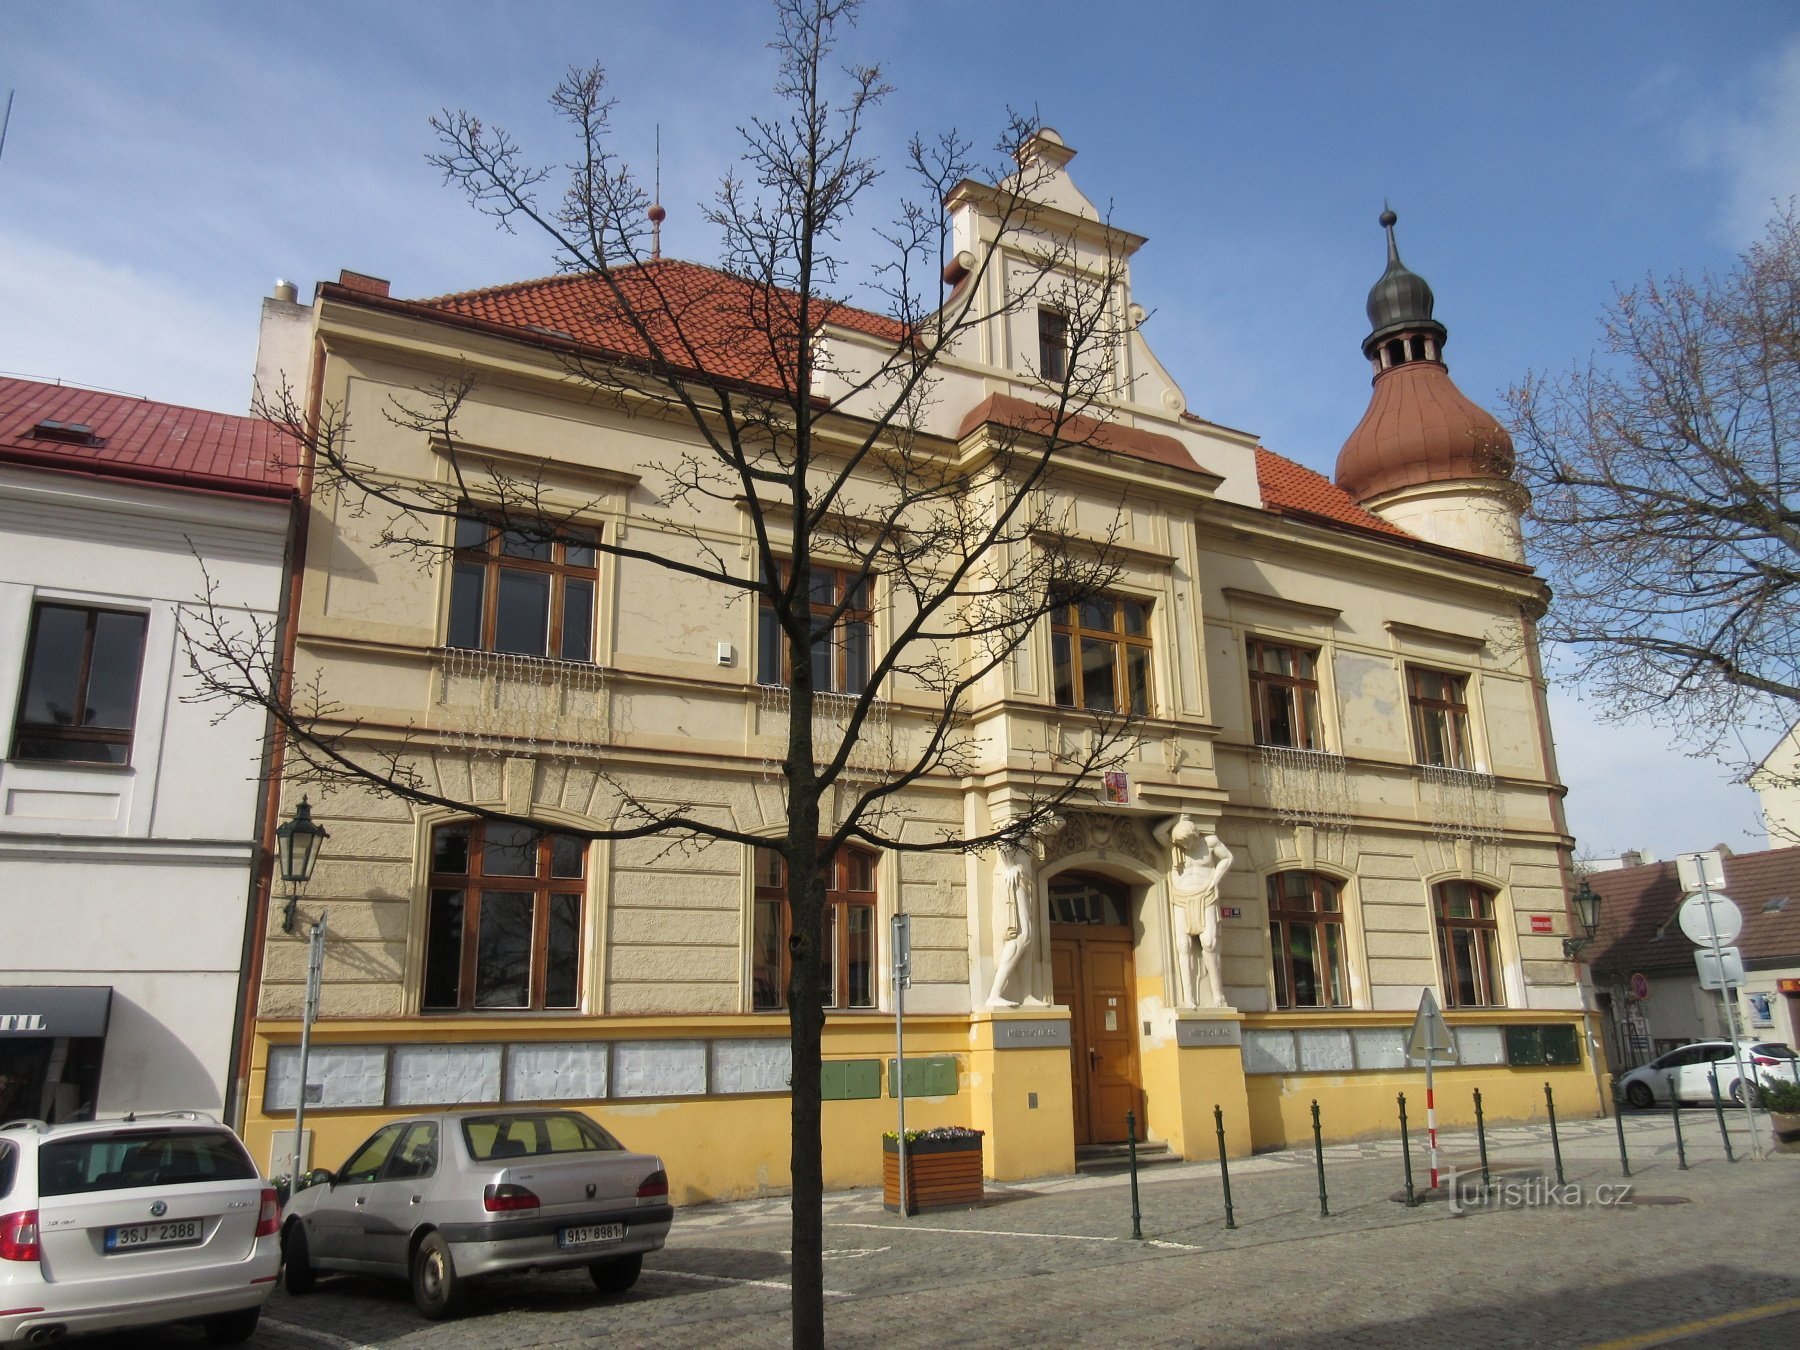 Văn phòng thành phố trên Quảng trường Masaryk